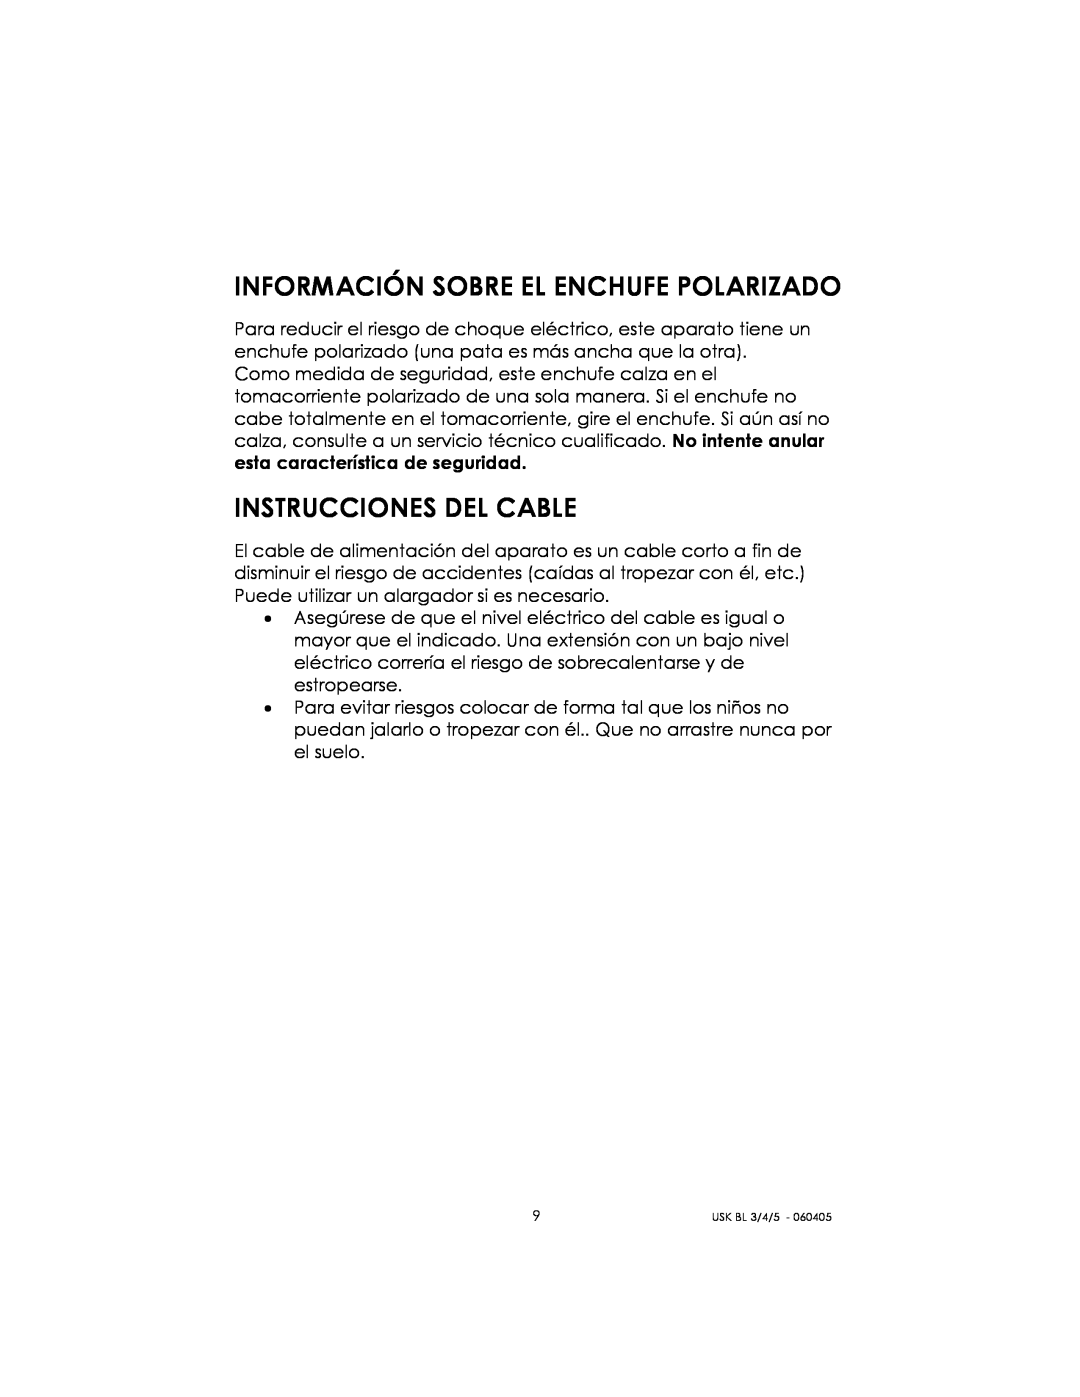 Kalorik USK BL 3/4/5 manual Información Sobre El Enchufe Polarizado, Instrucciones Del Cable 